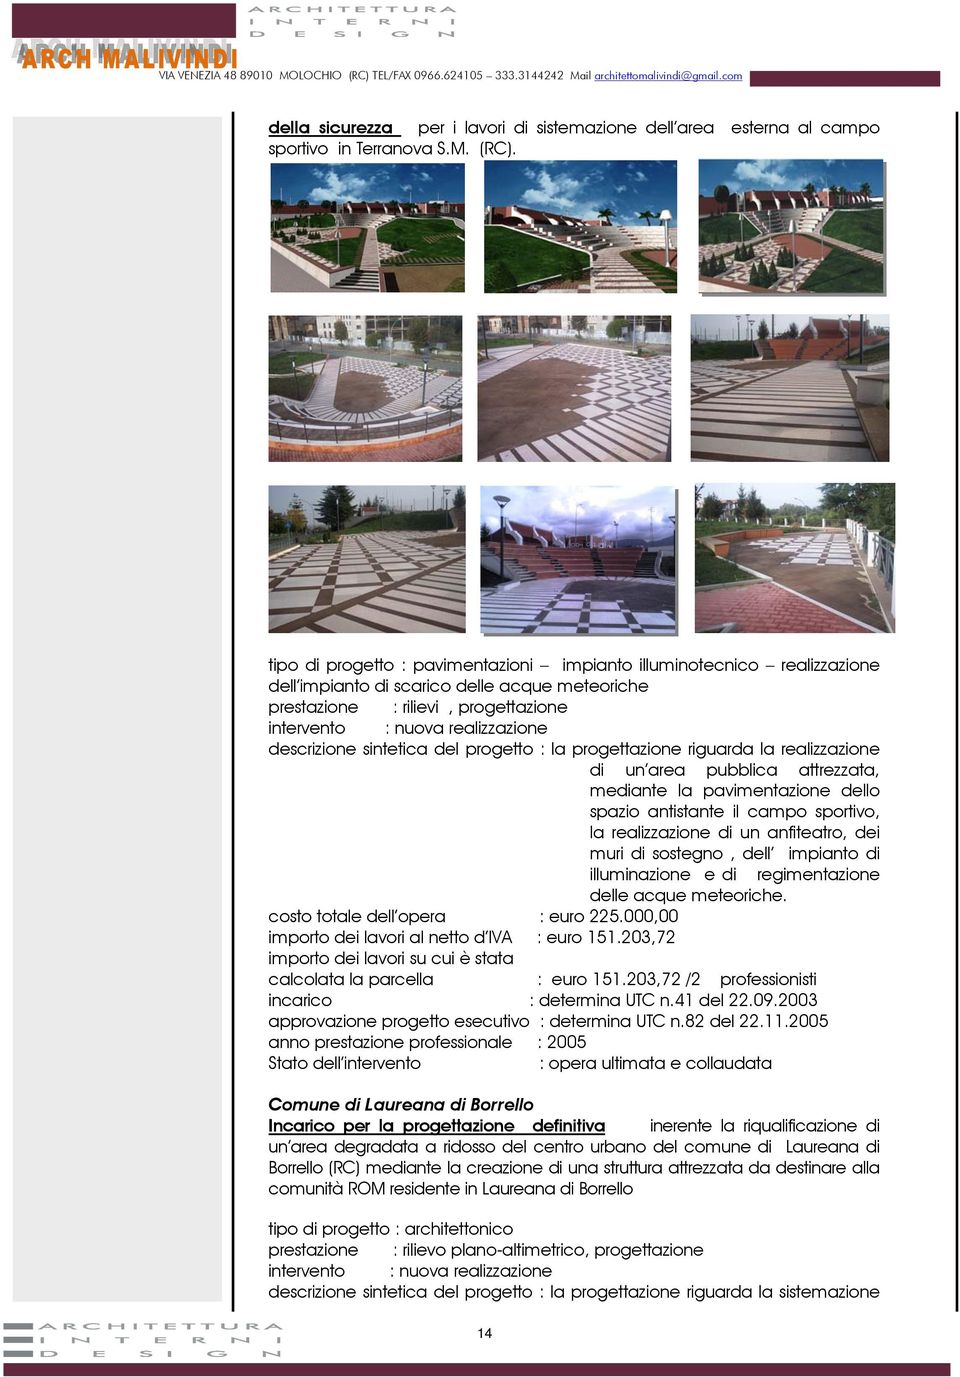 descrizione sintetica del progetto : la progettazione riguarda la realizzazione di un area pubblica attrezzata, mediante la pavimentazione dello spazio antistante il campo sportivo, la realizzazione